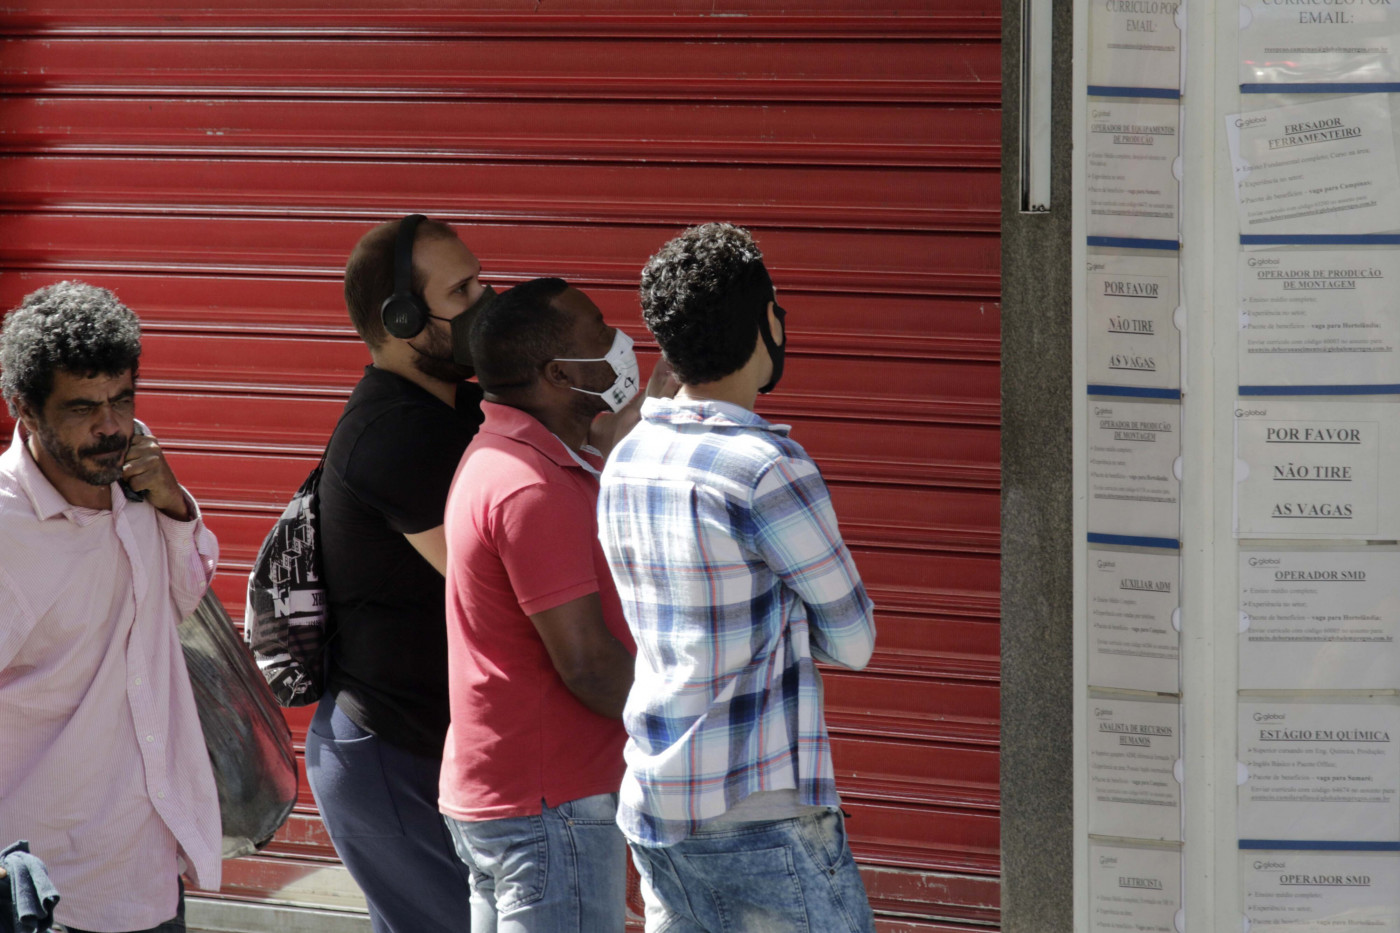 Pessoas em busca de vagas em frente à uma agência de emprego no centro de Campinas, São Paulo